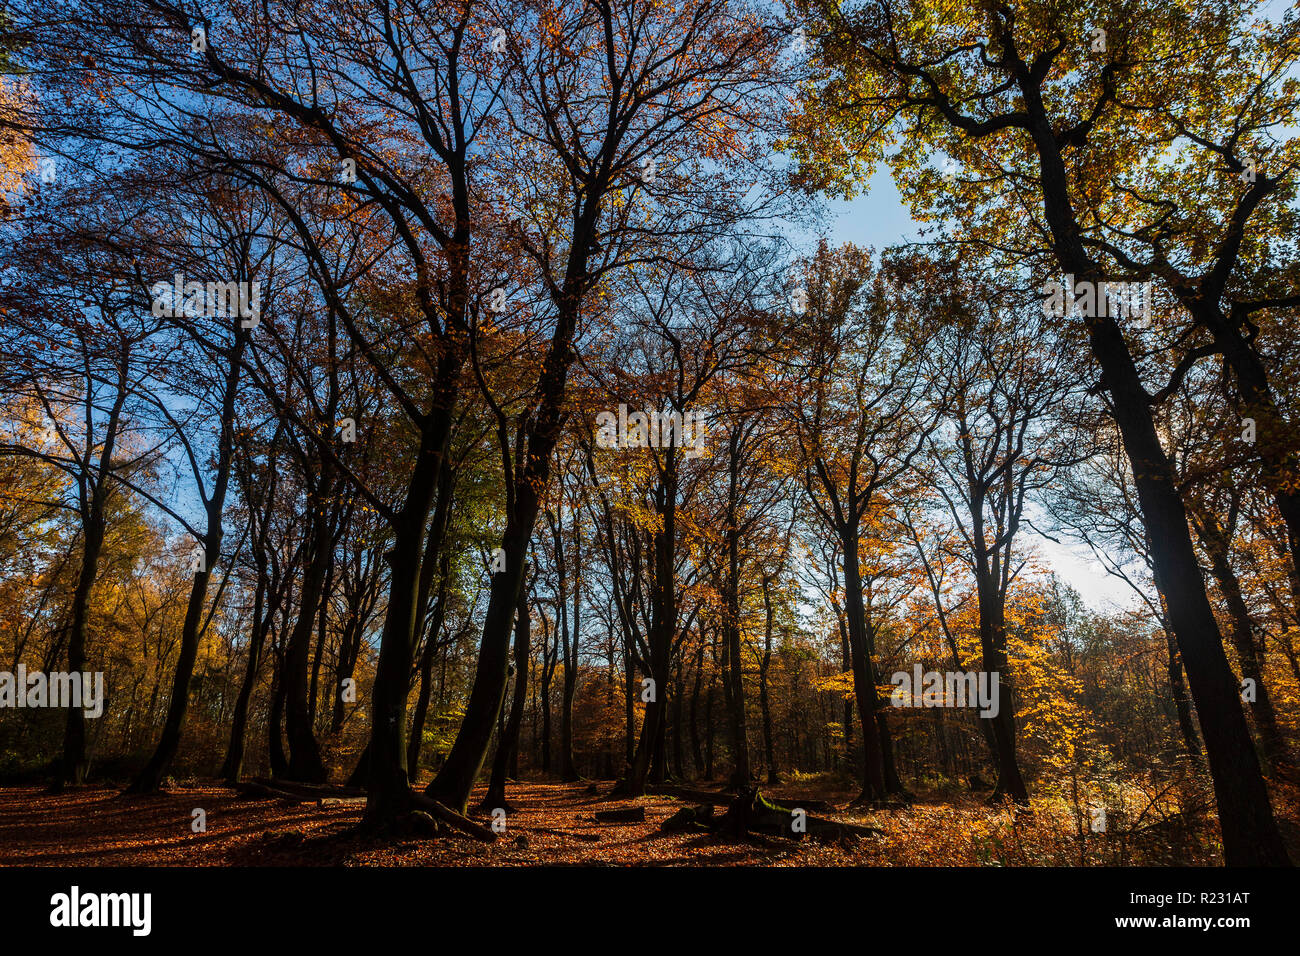 Laubwald mit Gemeinsamen Europäischen Buche (Fagus sylvatica) Lager buntes Laub im Herbst, Mülheim an der Ruhr, Deutschland Stockfoto